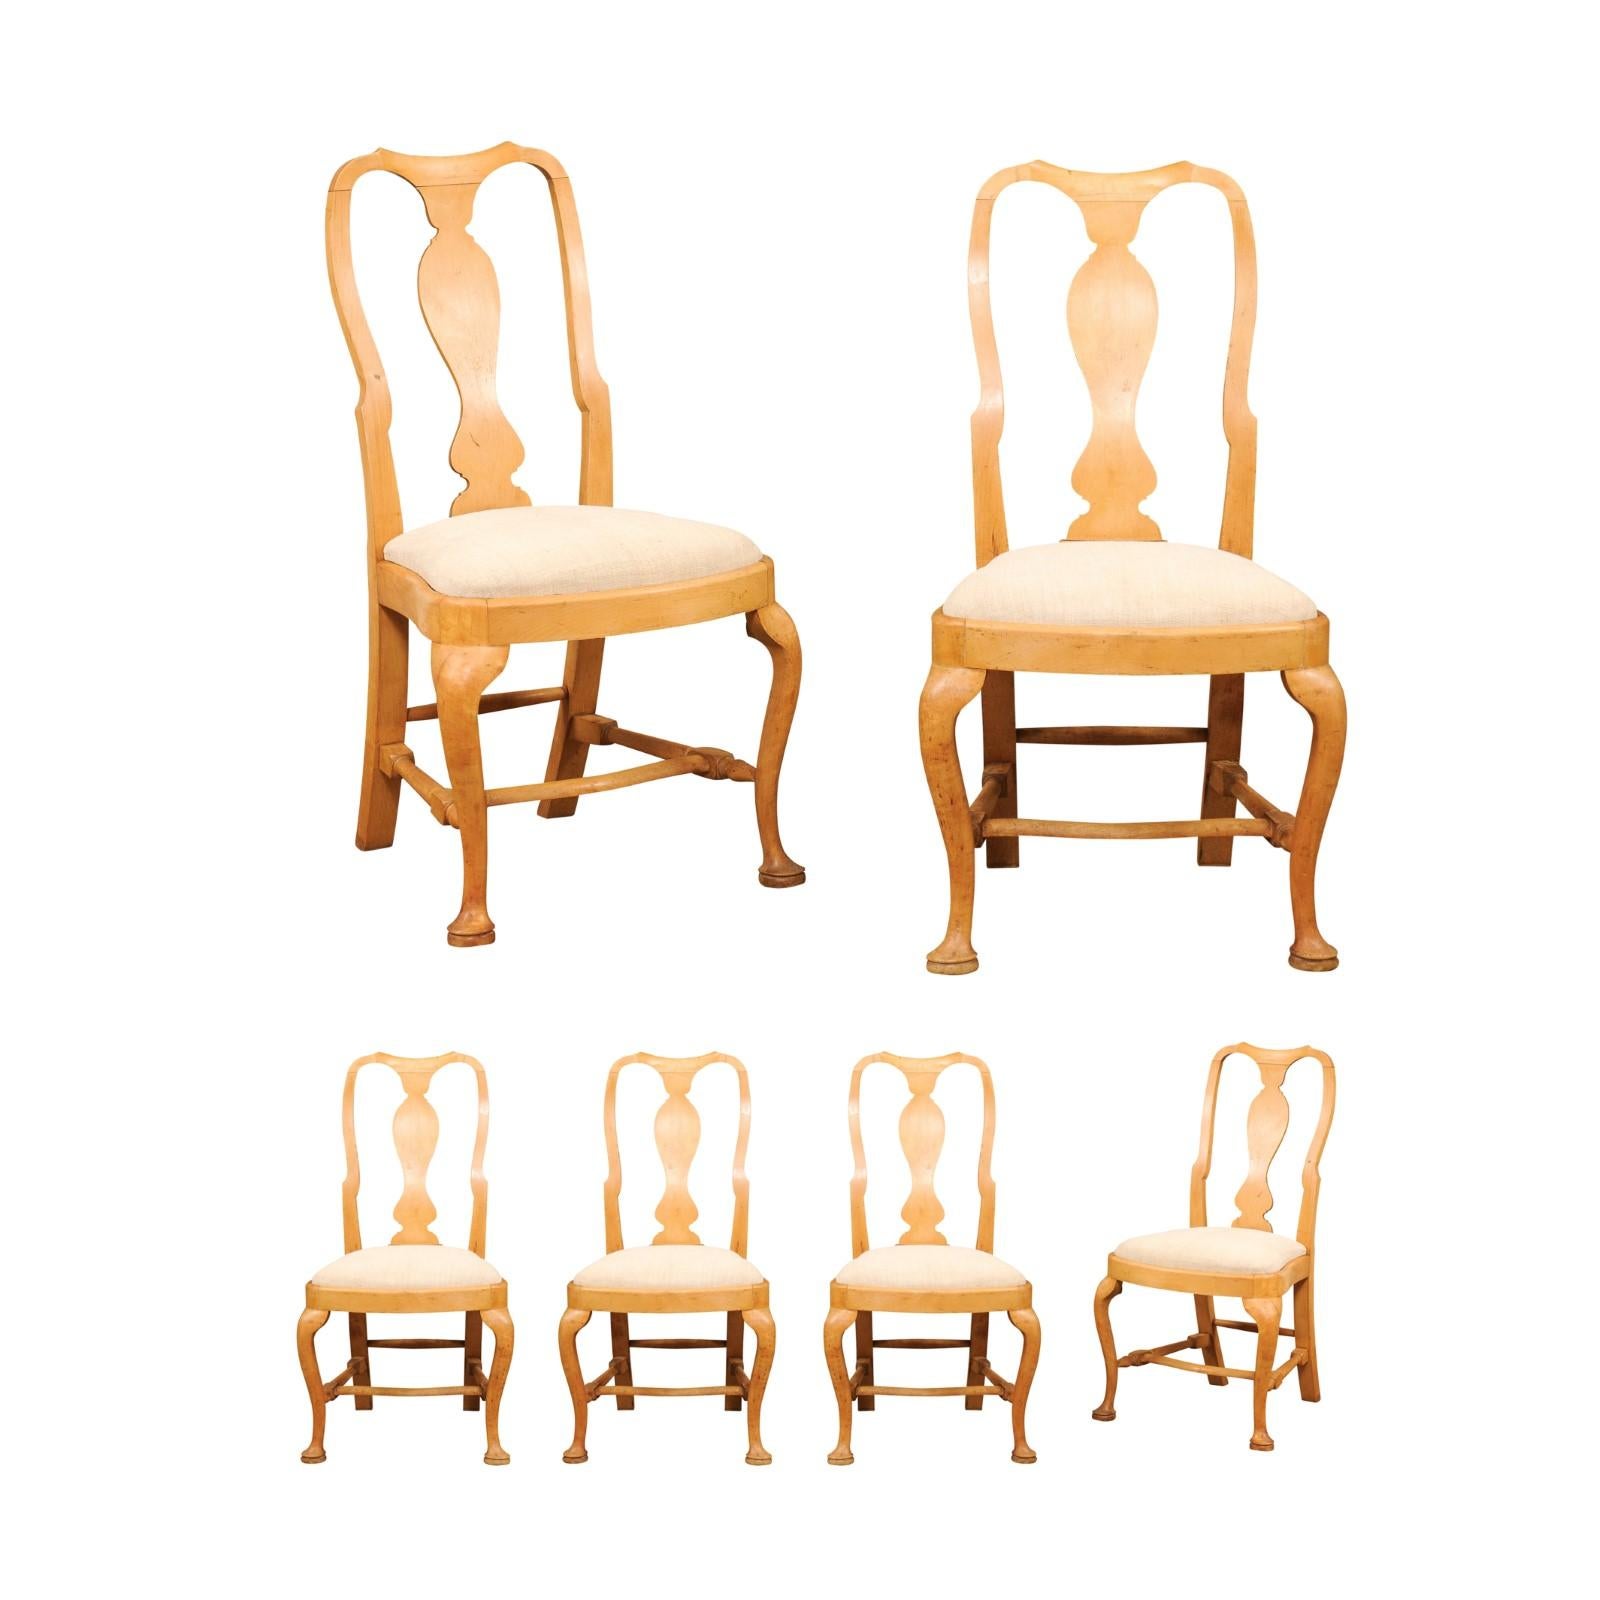 Ensemble de six chaises de salle à manger en bois de style rococo suédois, datant de la fin du 19e siècle, avec éclisses sculptées, pieds en cabriole, pieds en coussinet, entretoises et sièges rembourrés. Créée en Suède au cours de la dernière